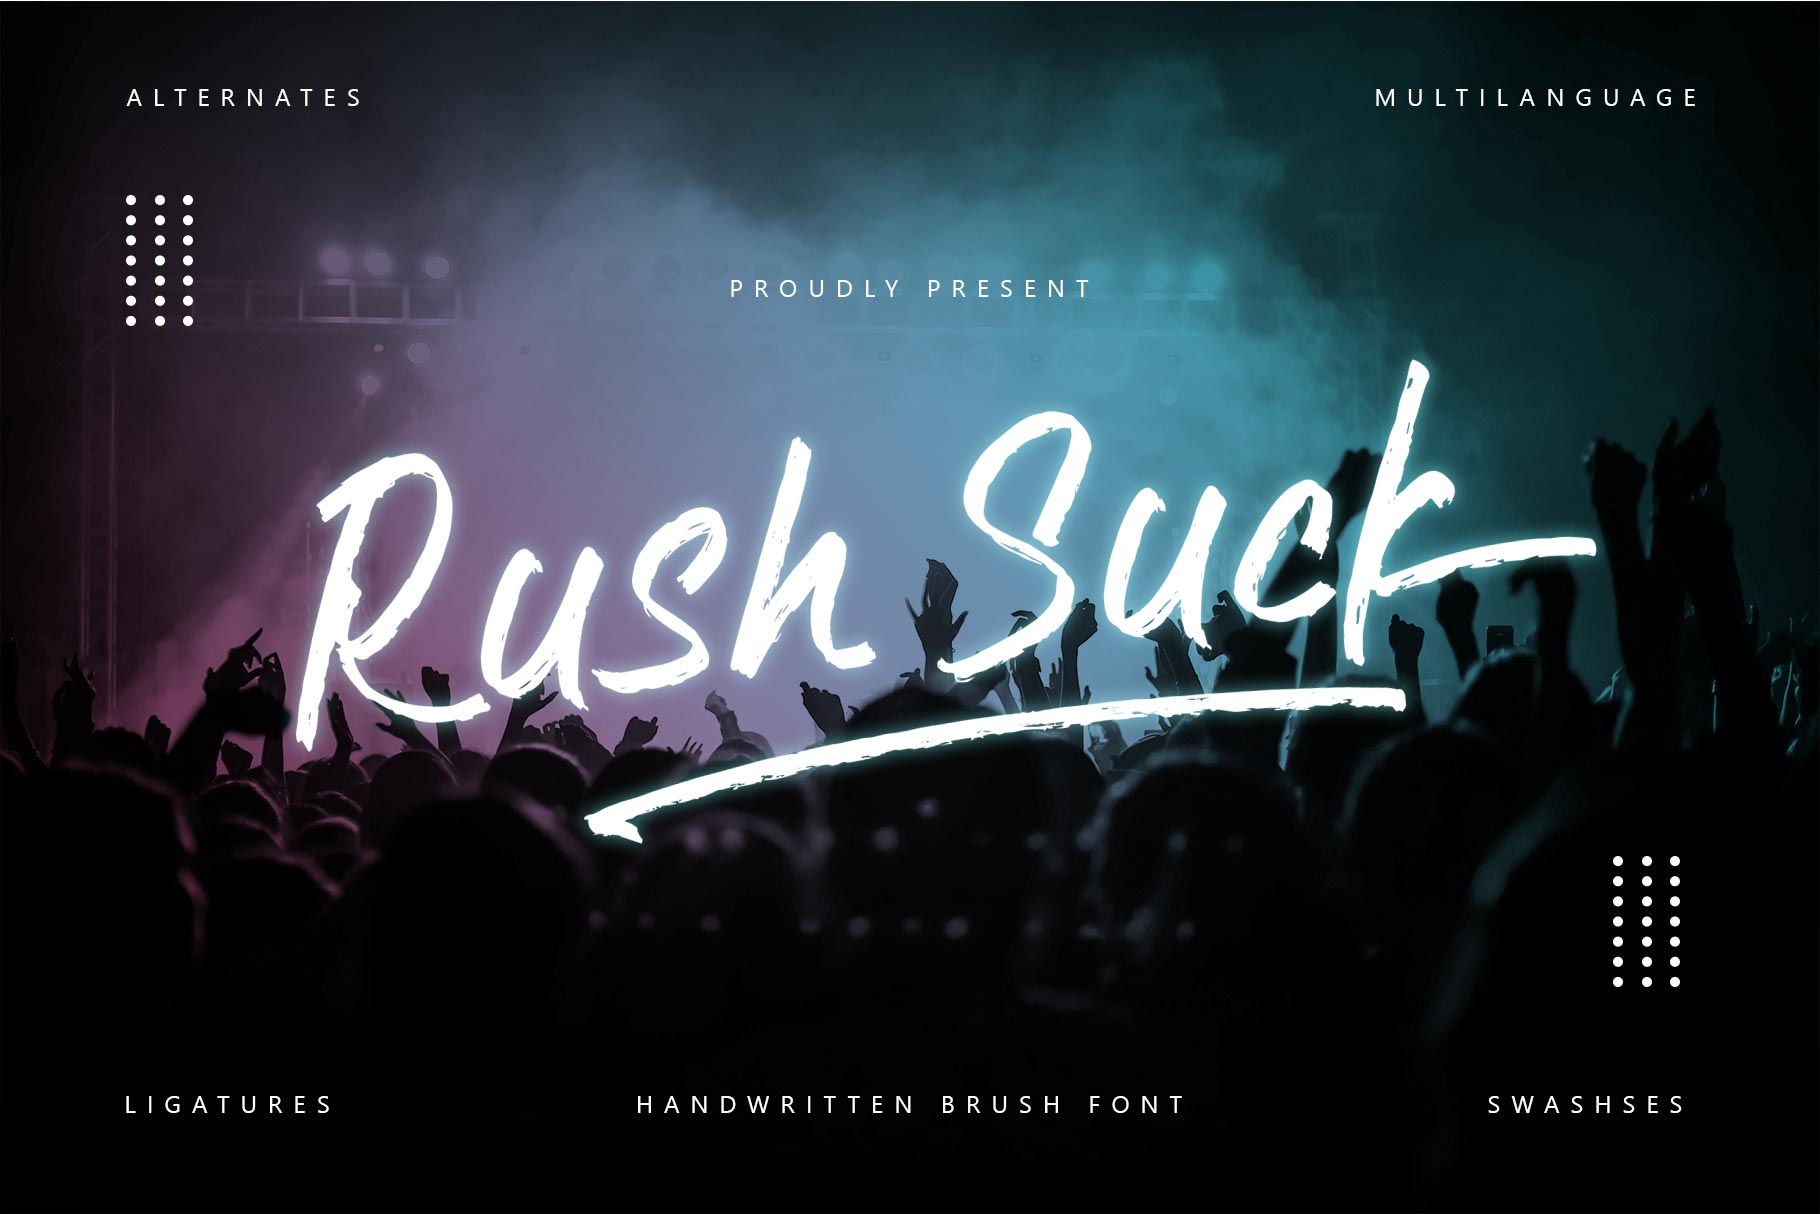 Rush suck